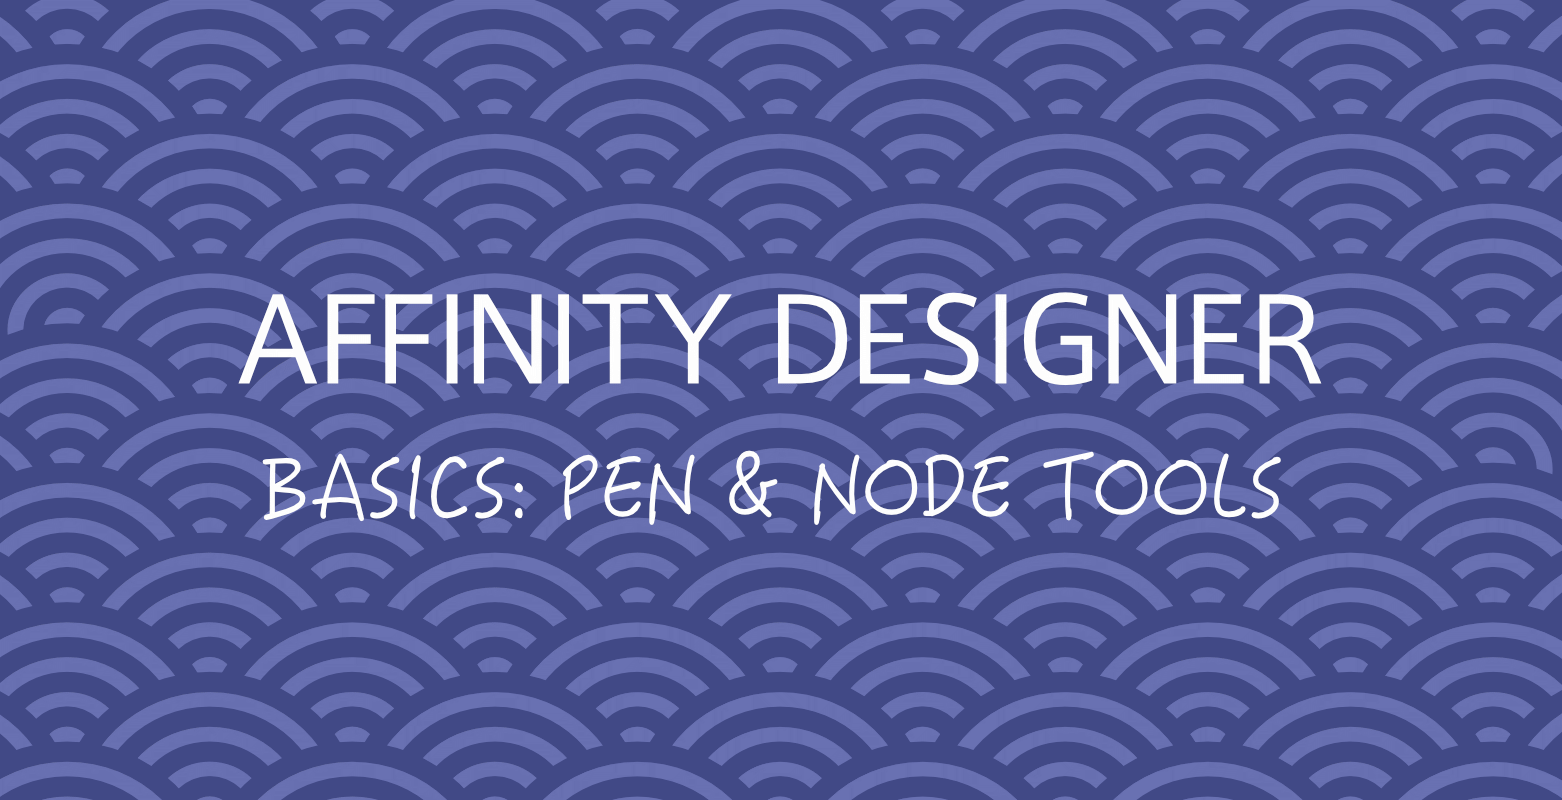 ad-basics-pen-and-node-tools